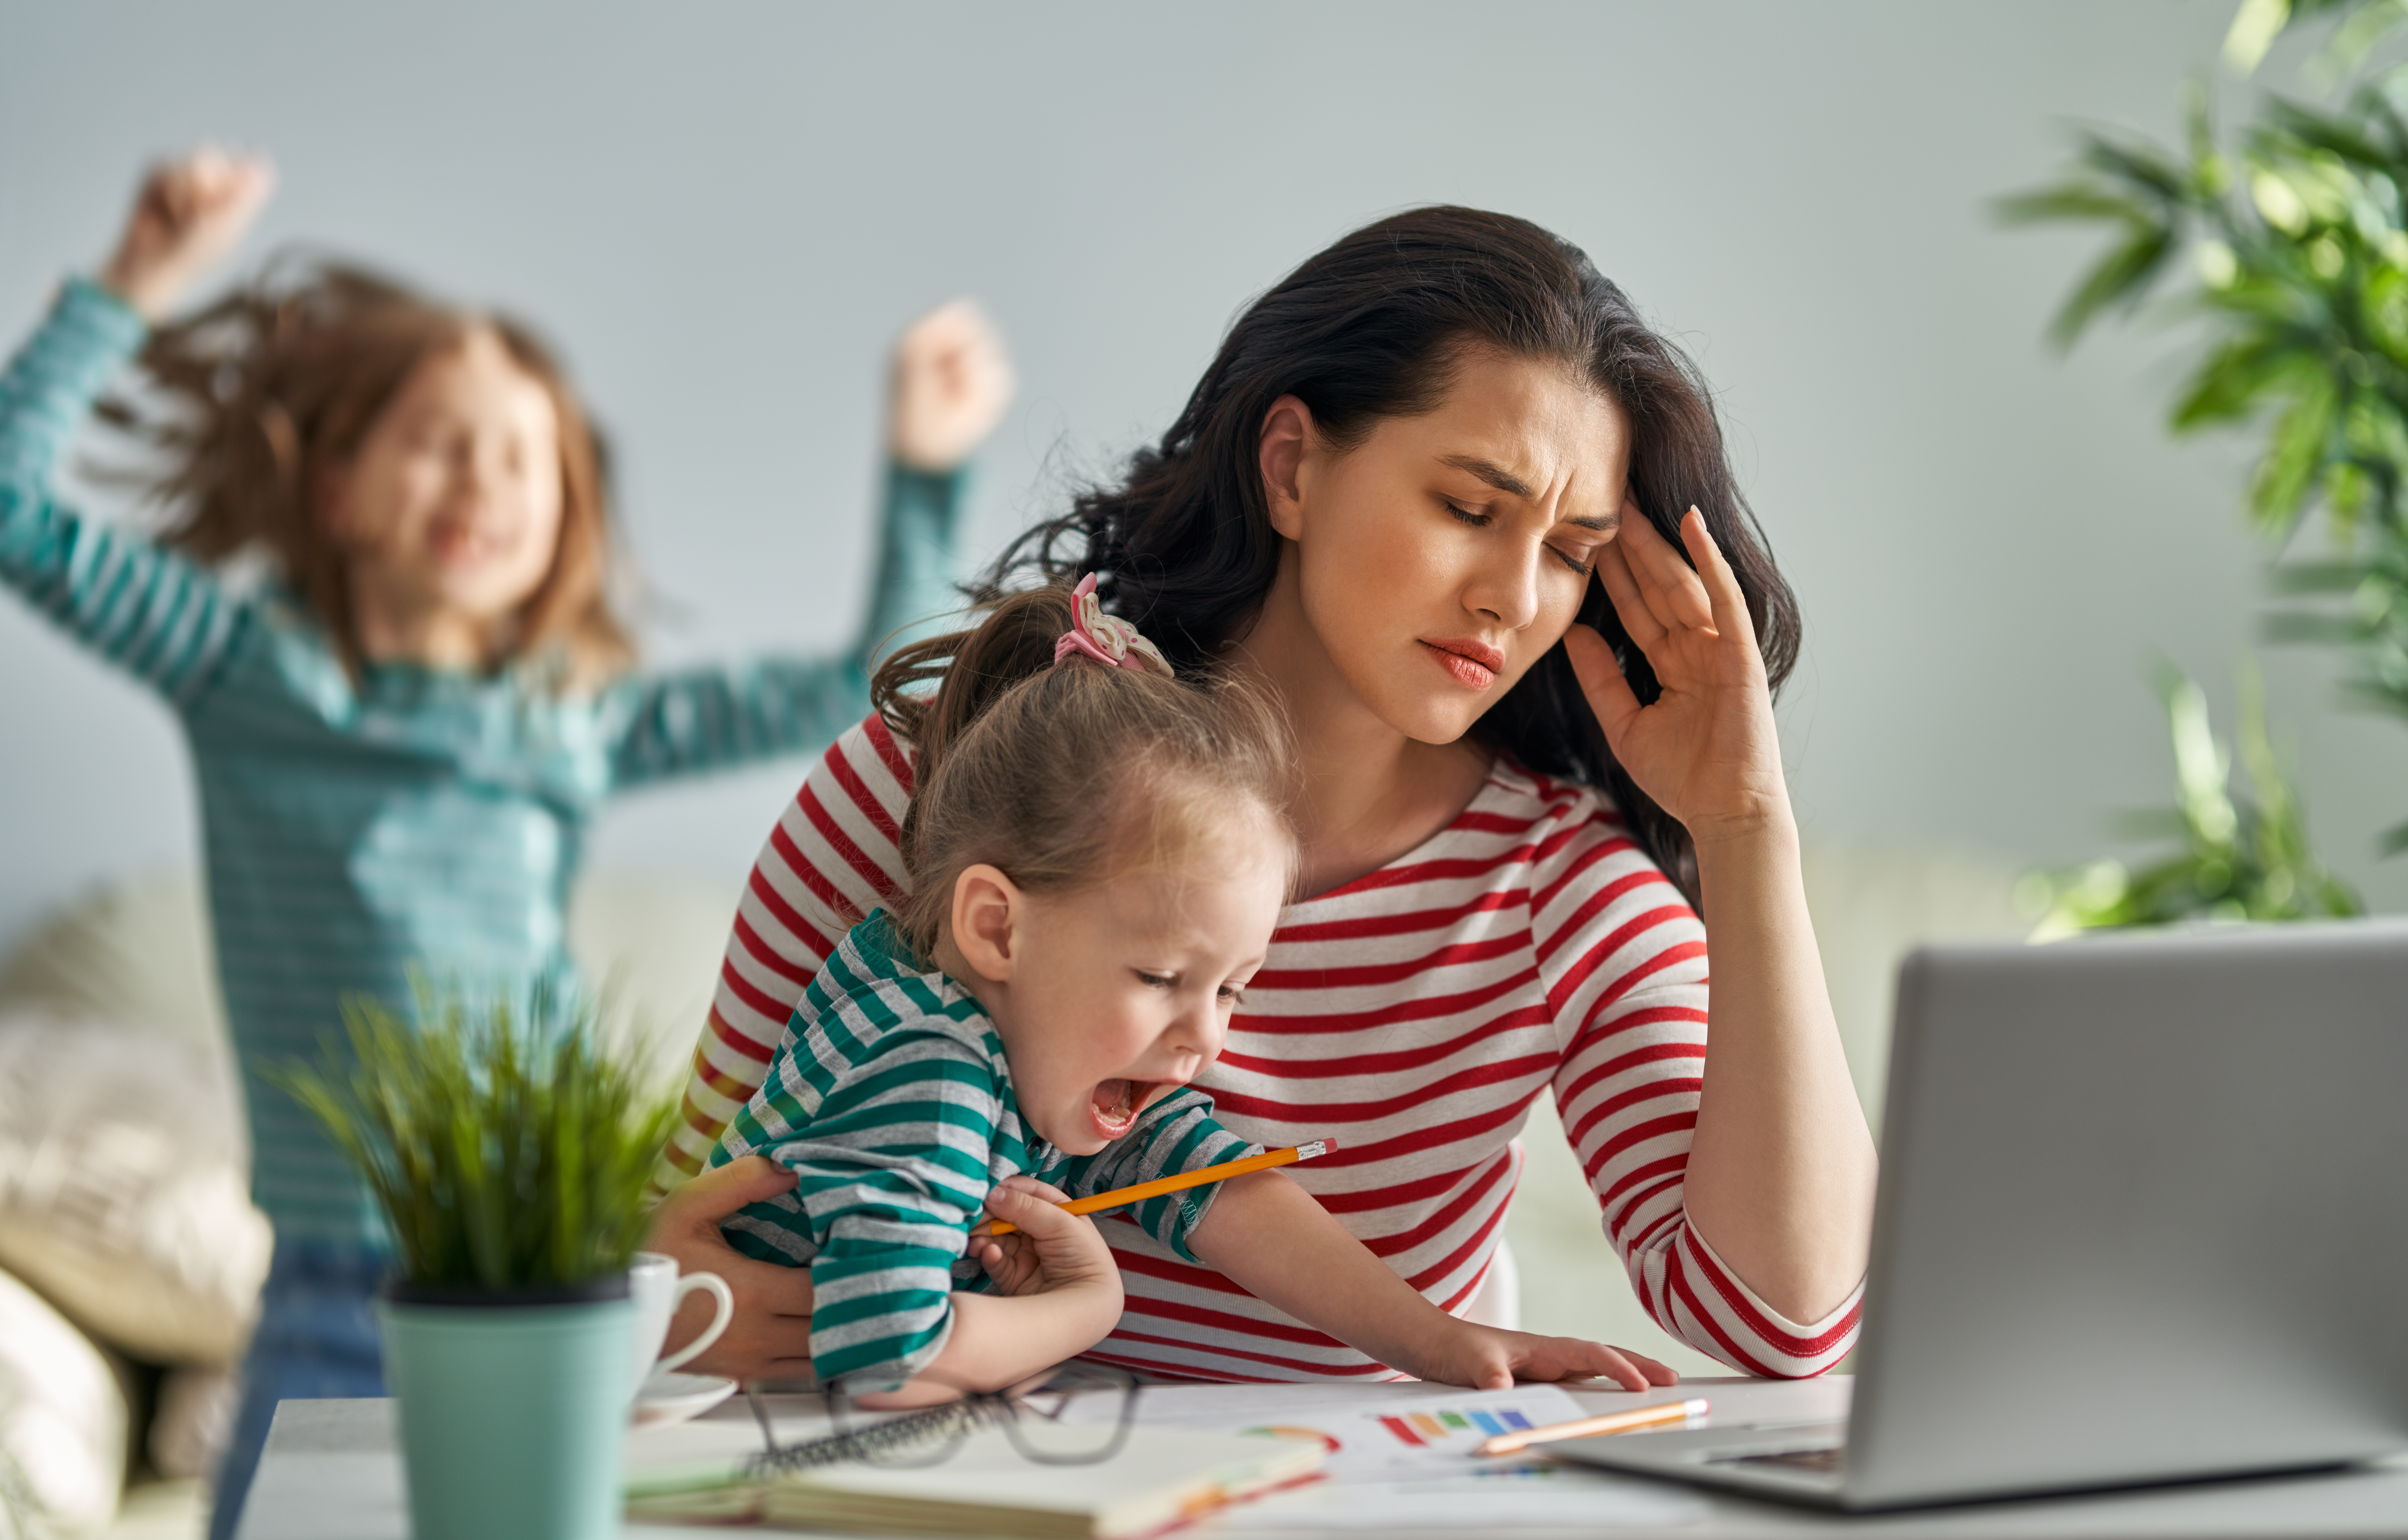 Home office con niños en casa: cómo ser más eficientes y superar el desafío  - Infobae